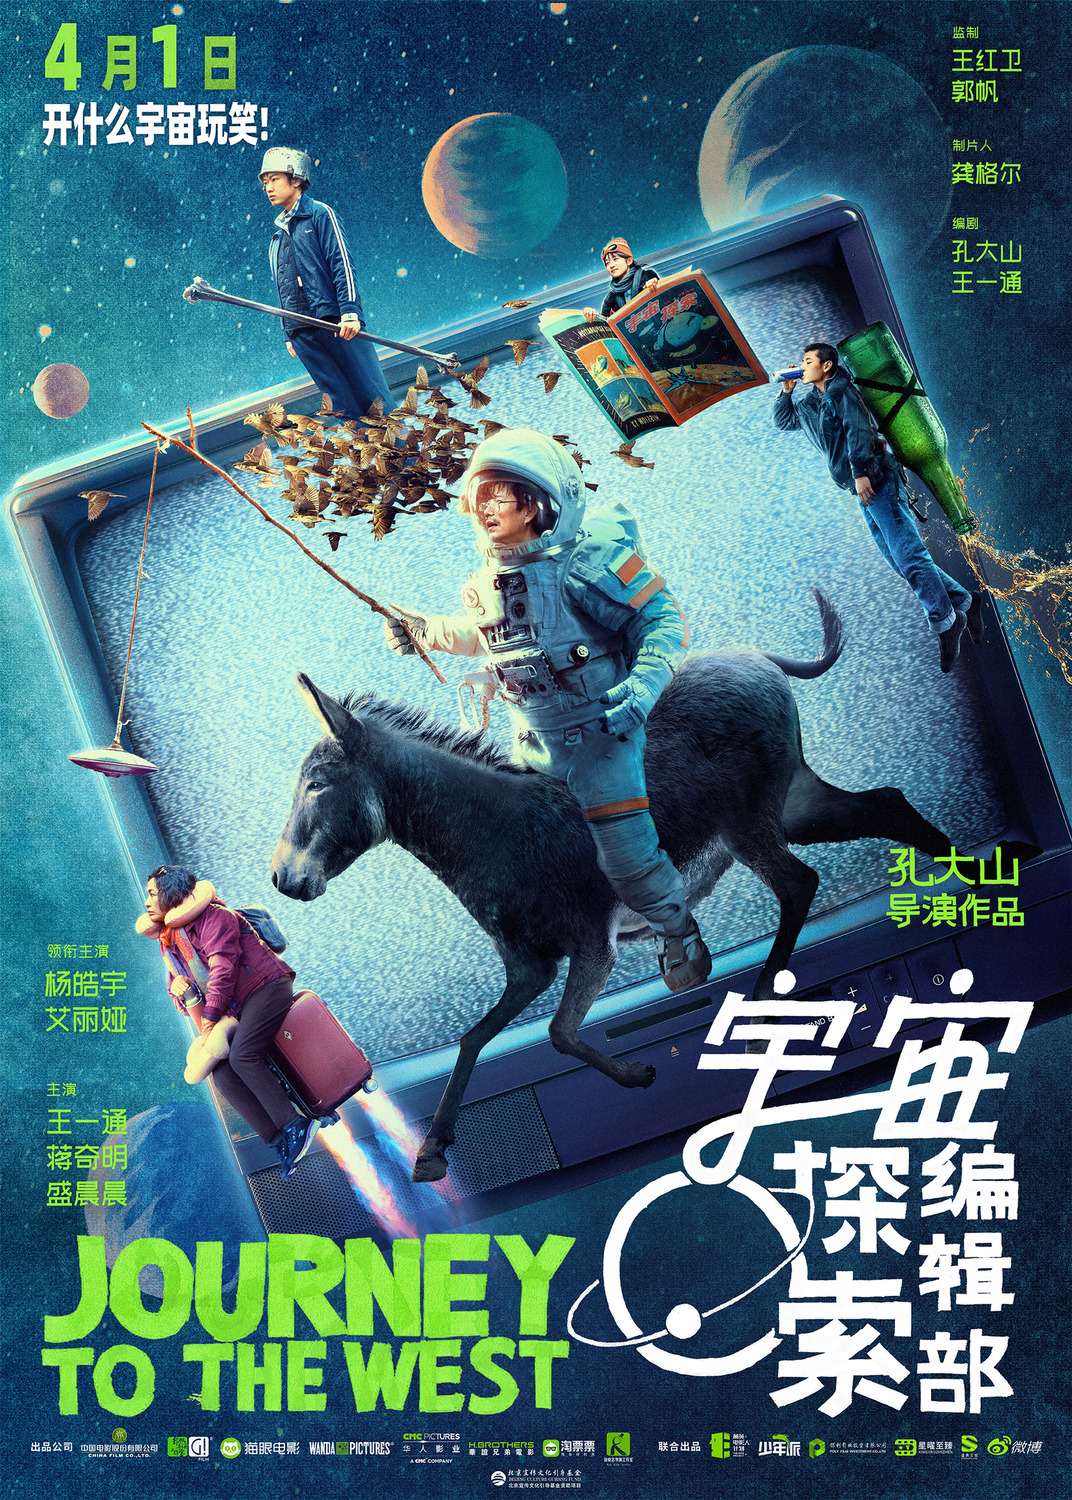 Extra Large Movie Poster Image for Yu zhou tan suo bian ji bu (#1 of 2)